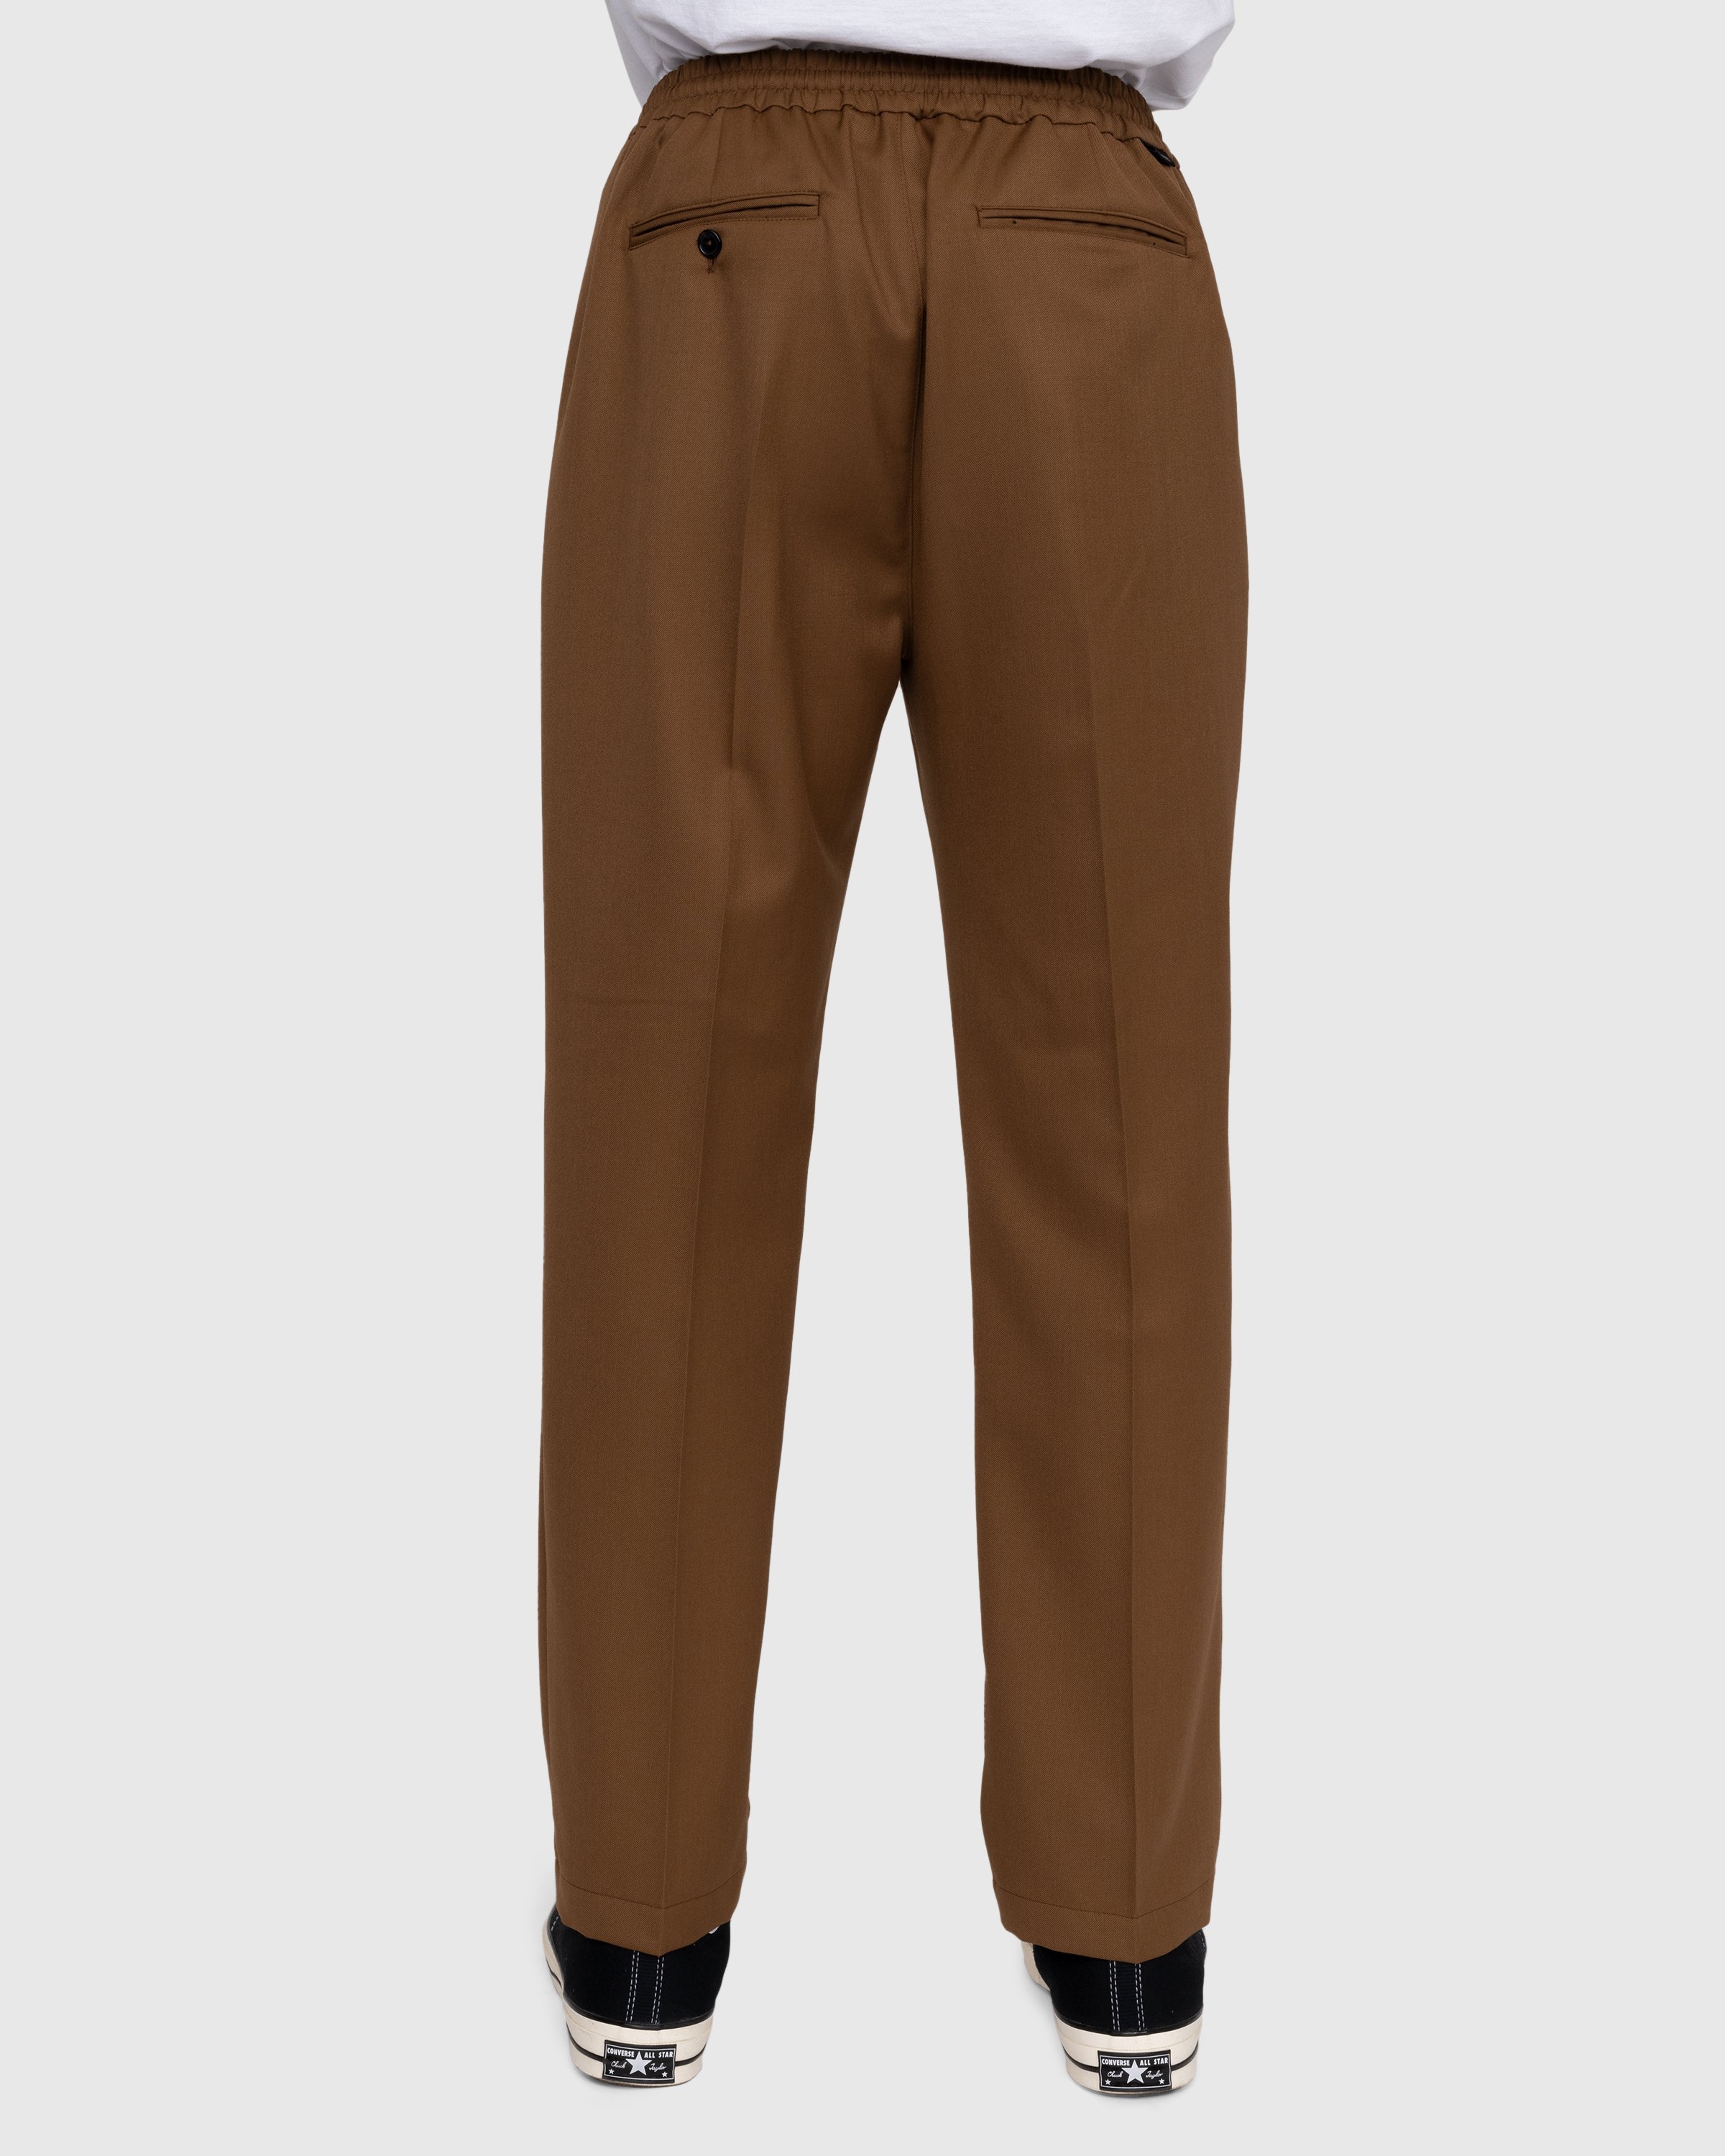 Highsnobiety - Wool Blend Elastic Pants Brown - Clothing - Brown - Image 4